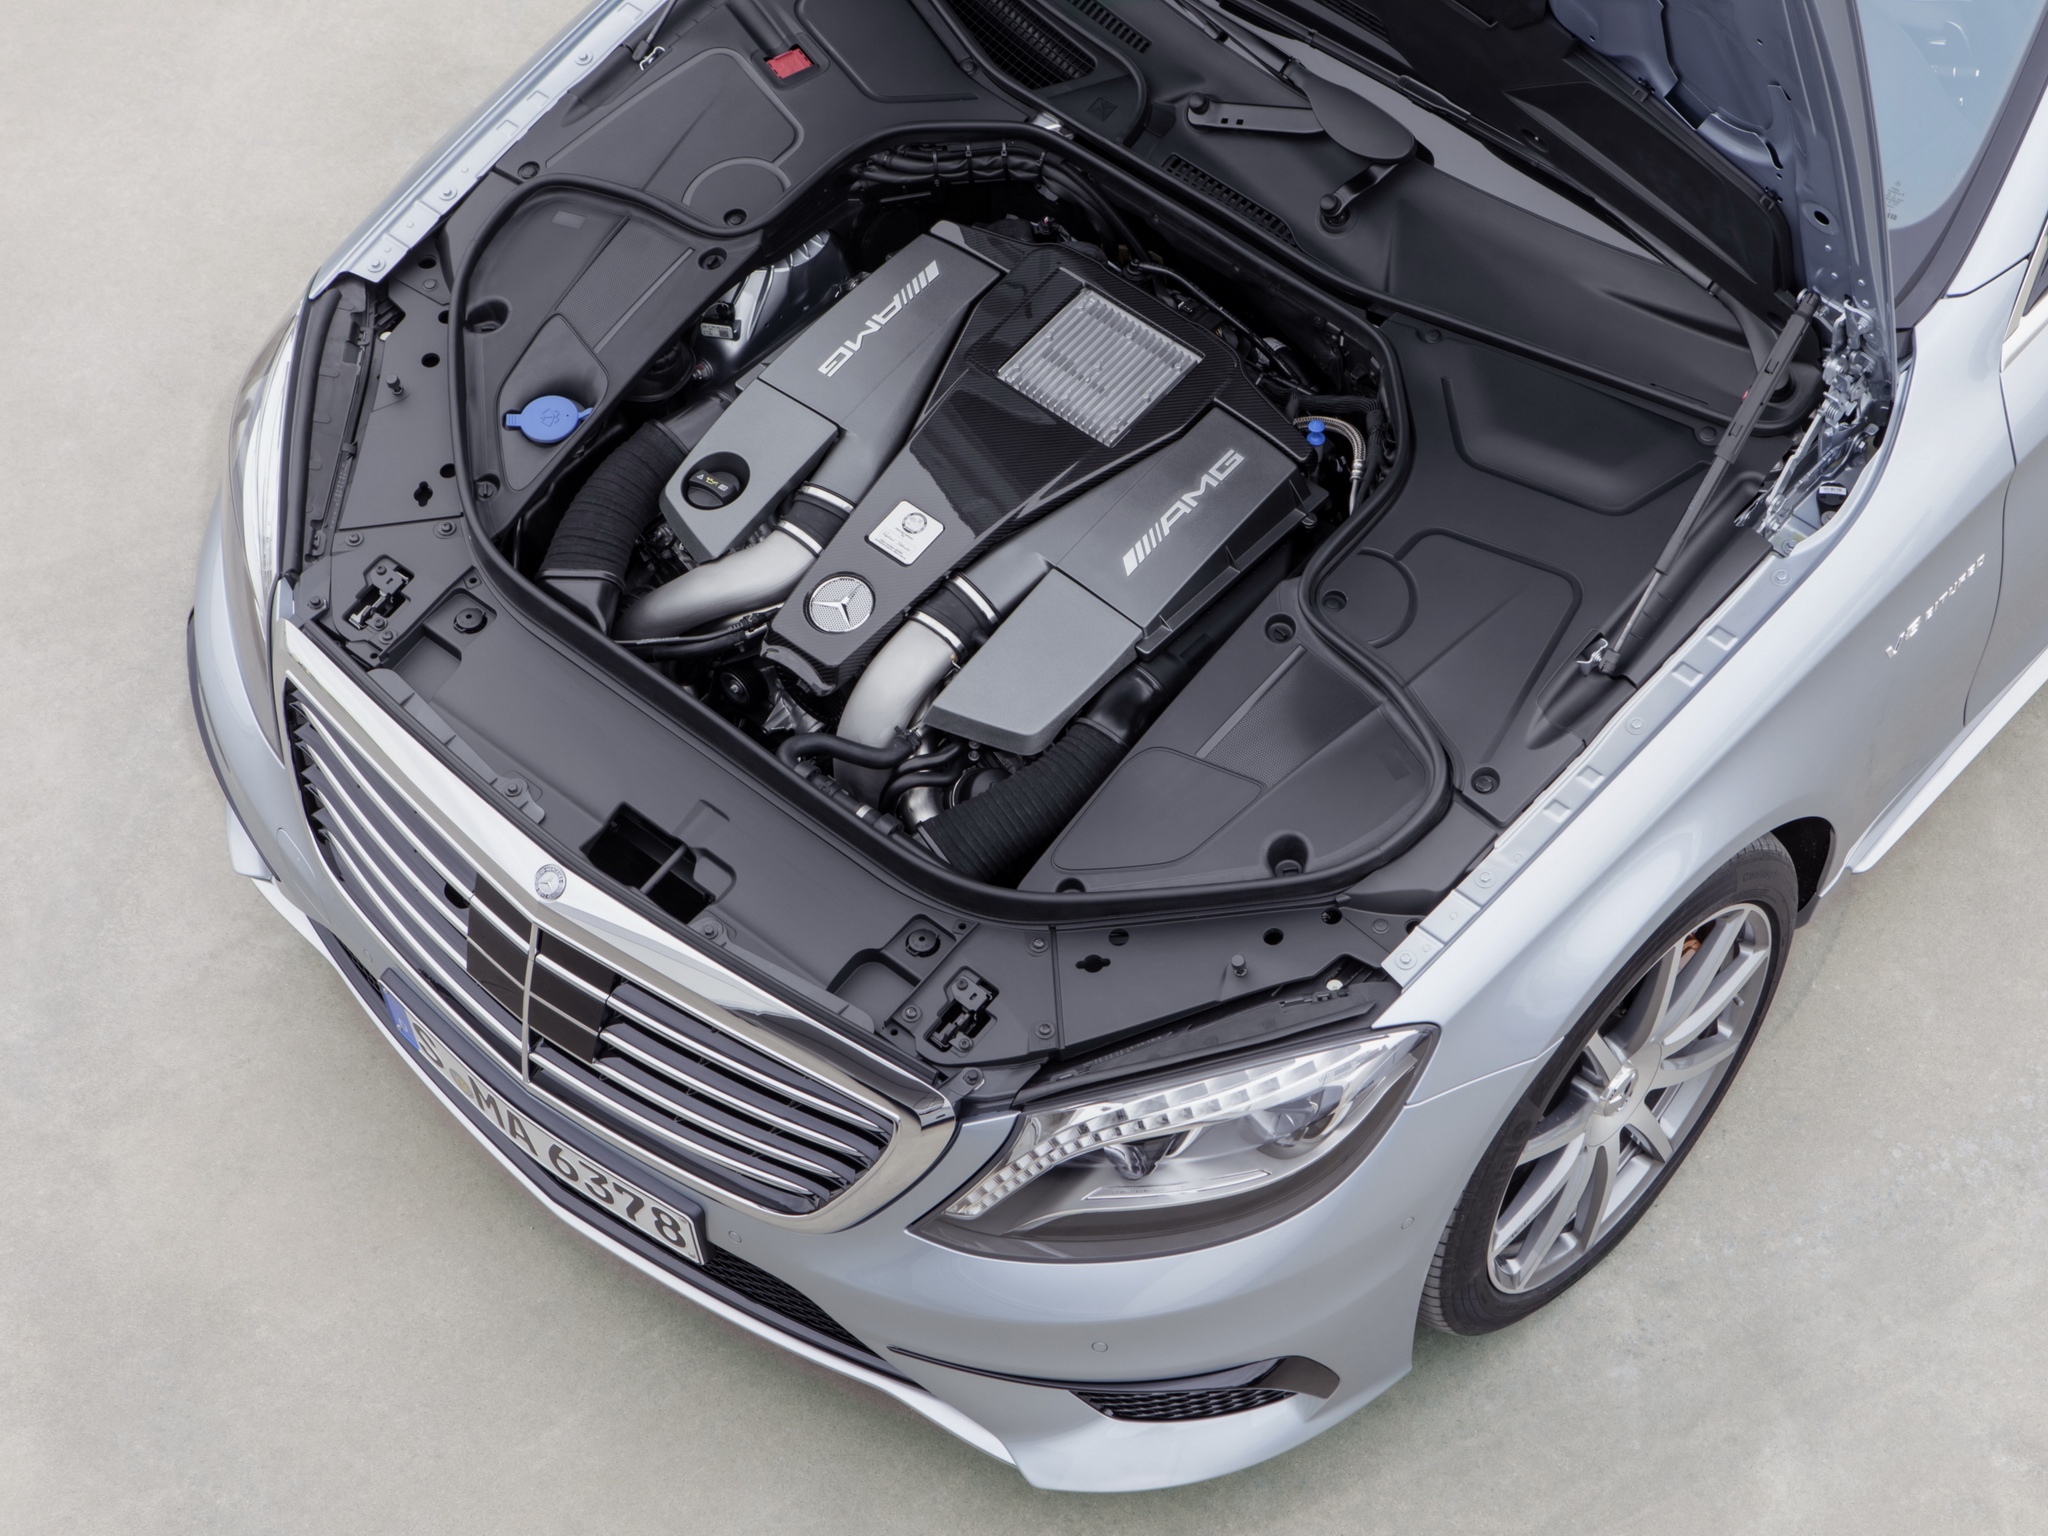 2013, Mercedes, Benz, S 63, Amg, W222, Luxury, Engine Wallpaper